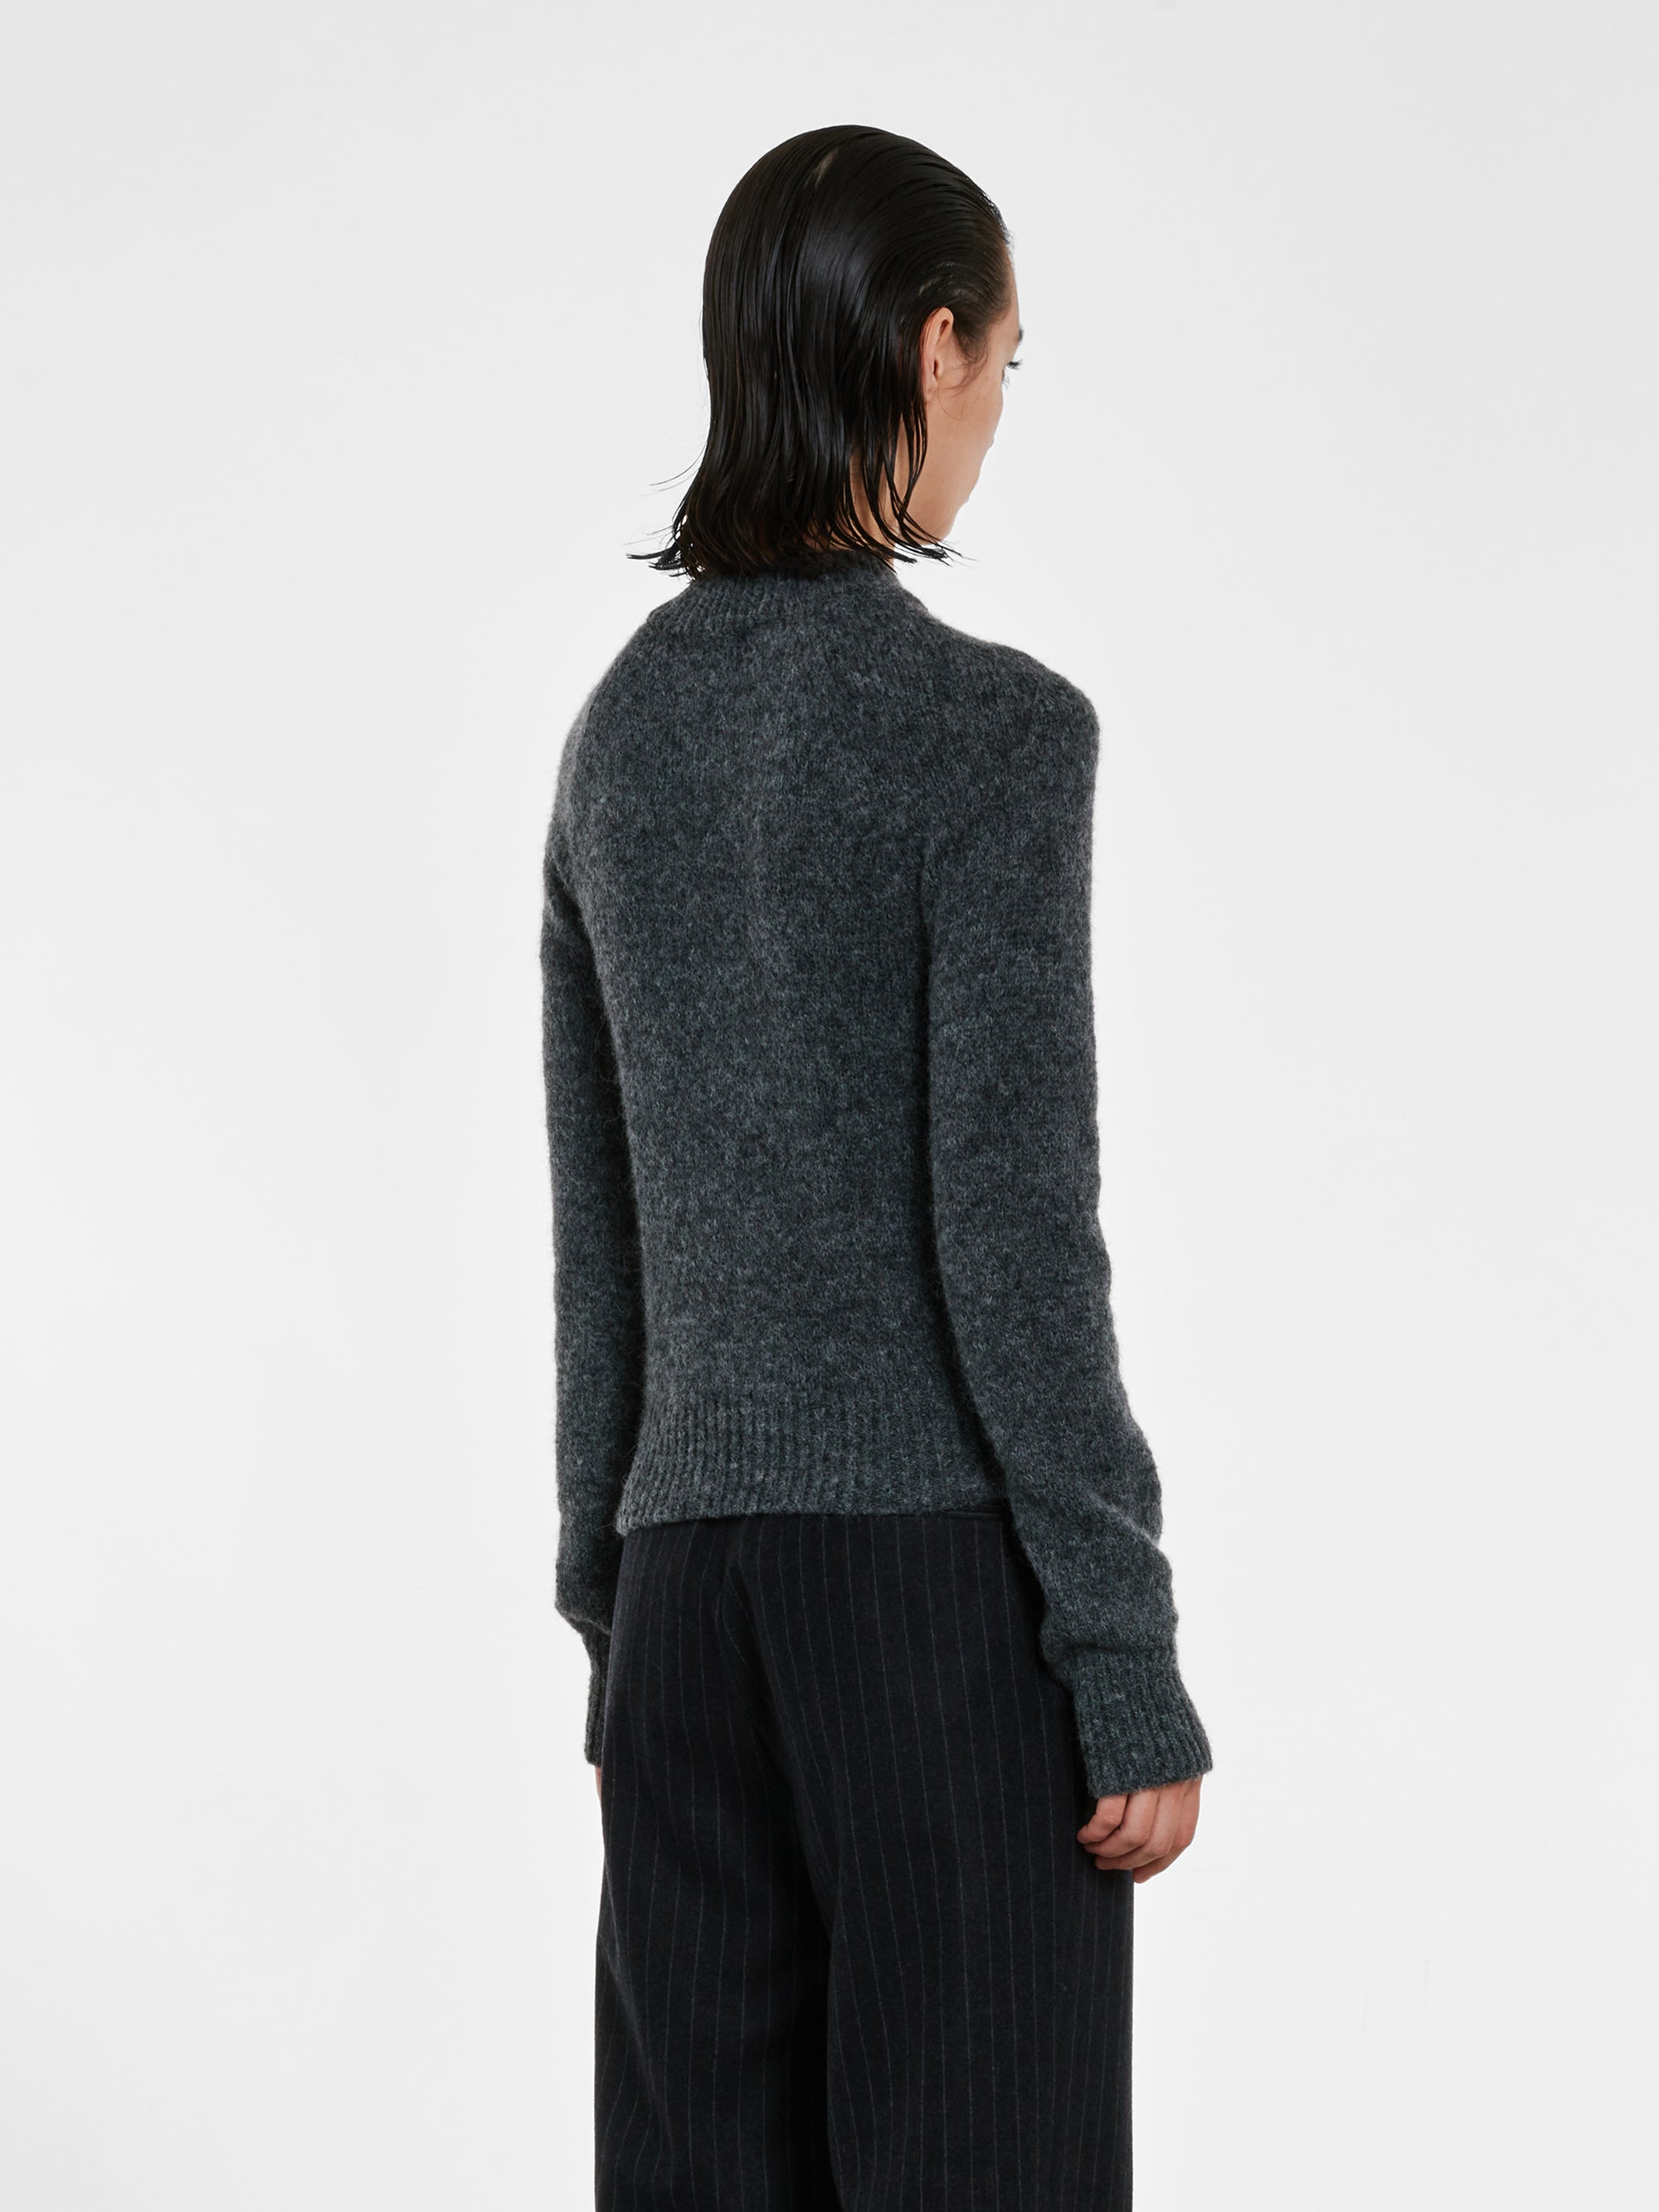 Dries Van Noten - Women’s Fitted Sweater - (Grey) view 4